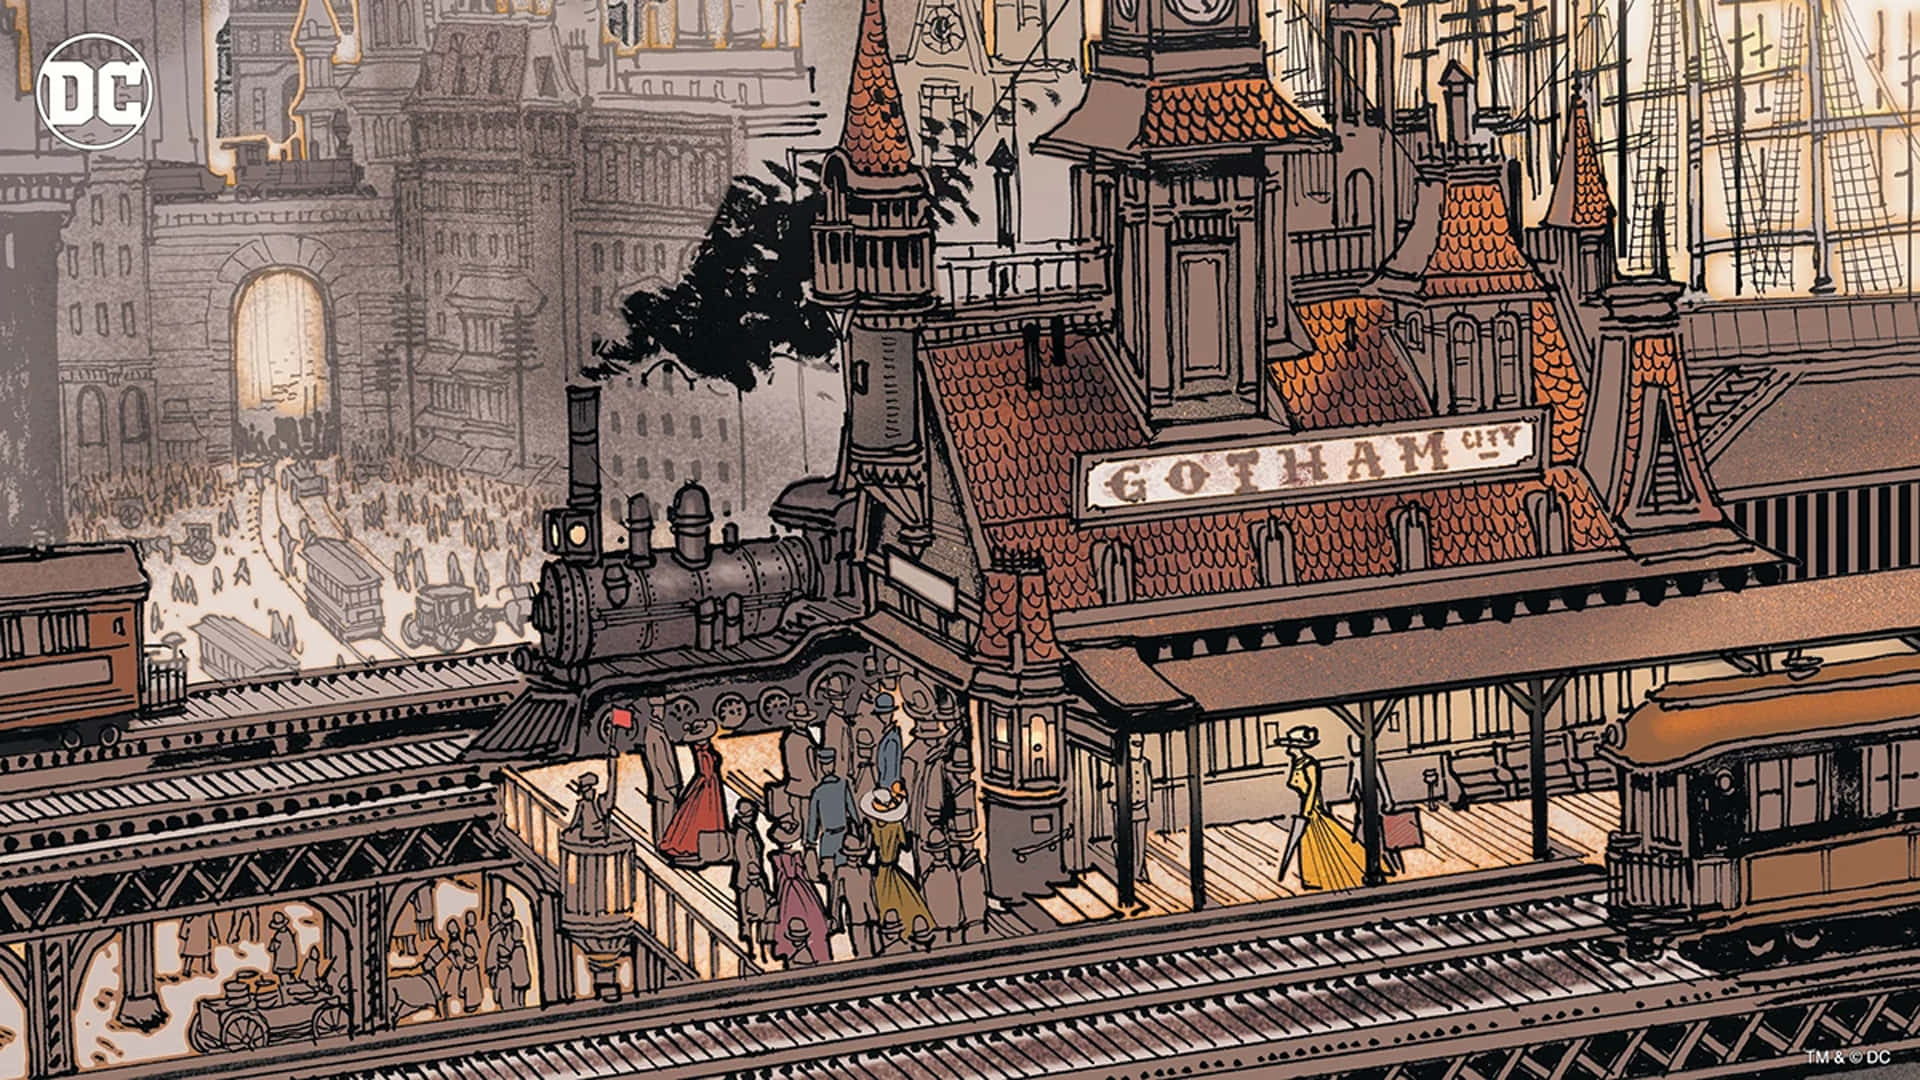 Äventyretväntar I Gotham Stad På Din Datorskärm Eller Mobilbakgrund. Wallpaper